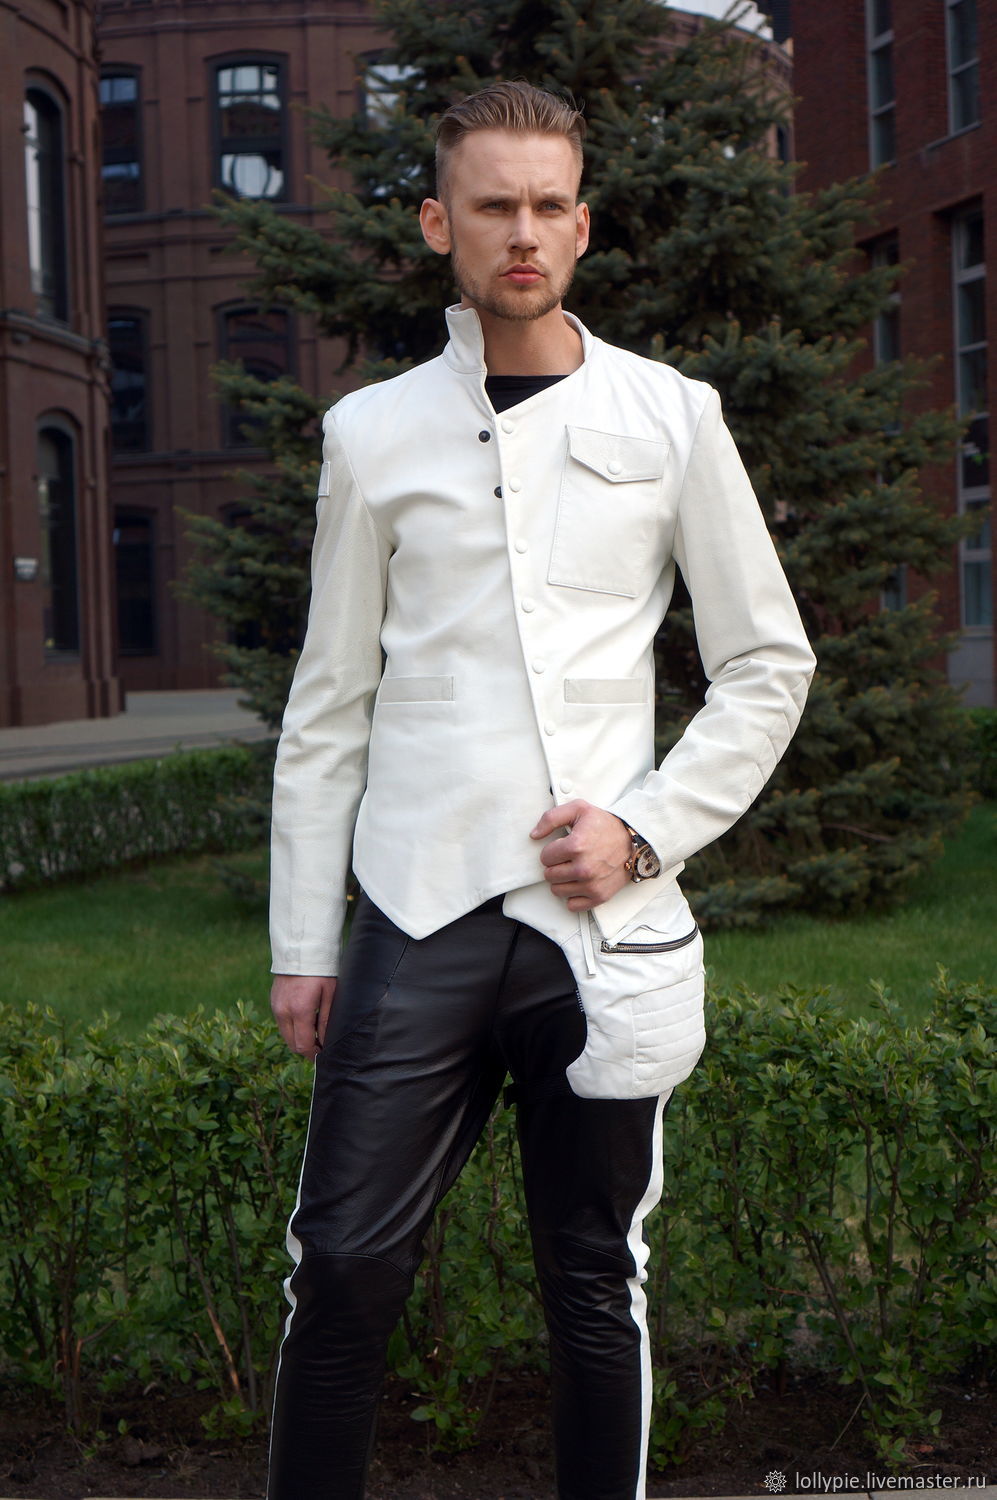 RedCafe | Построение мужского пиджака и рукава к мужскому пиджаку по системе sunnyhair.ru и сын